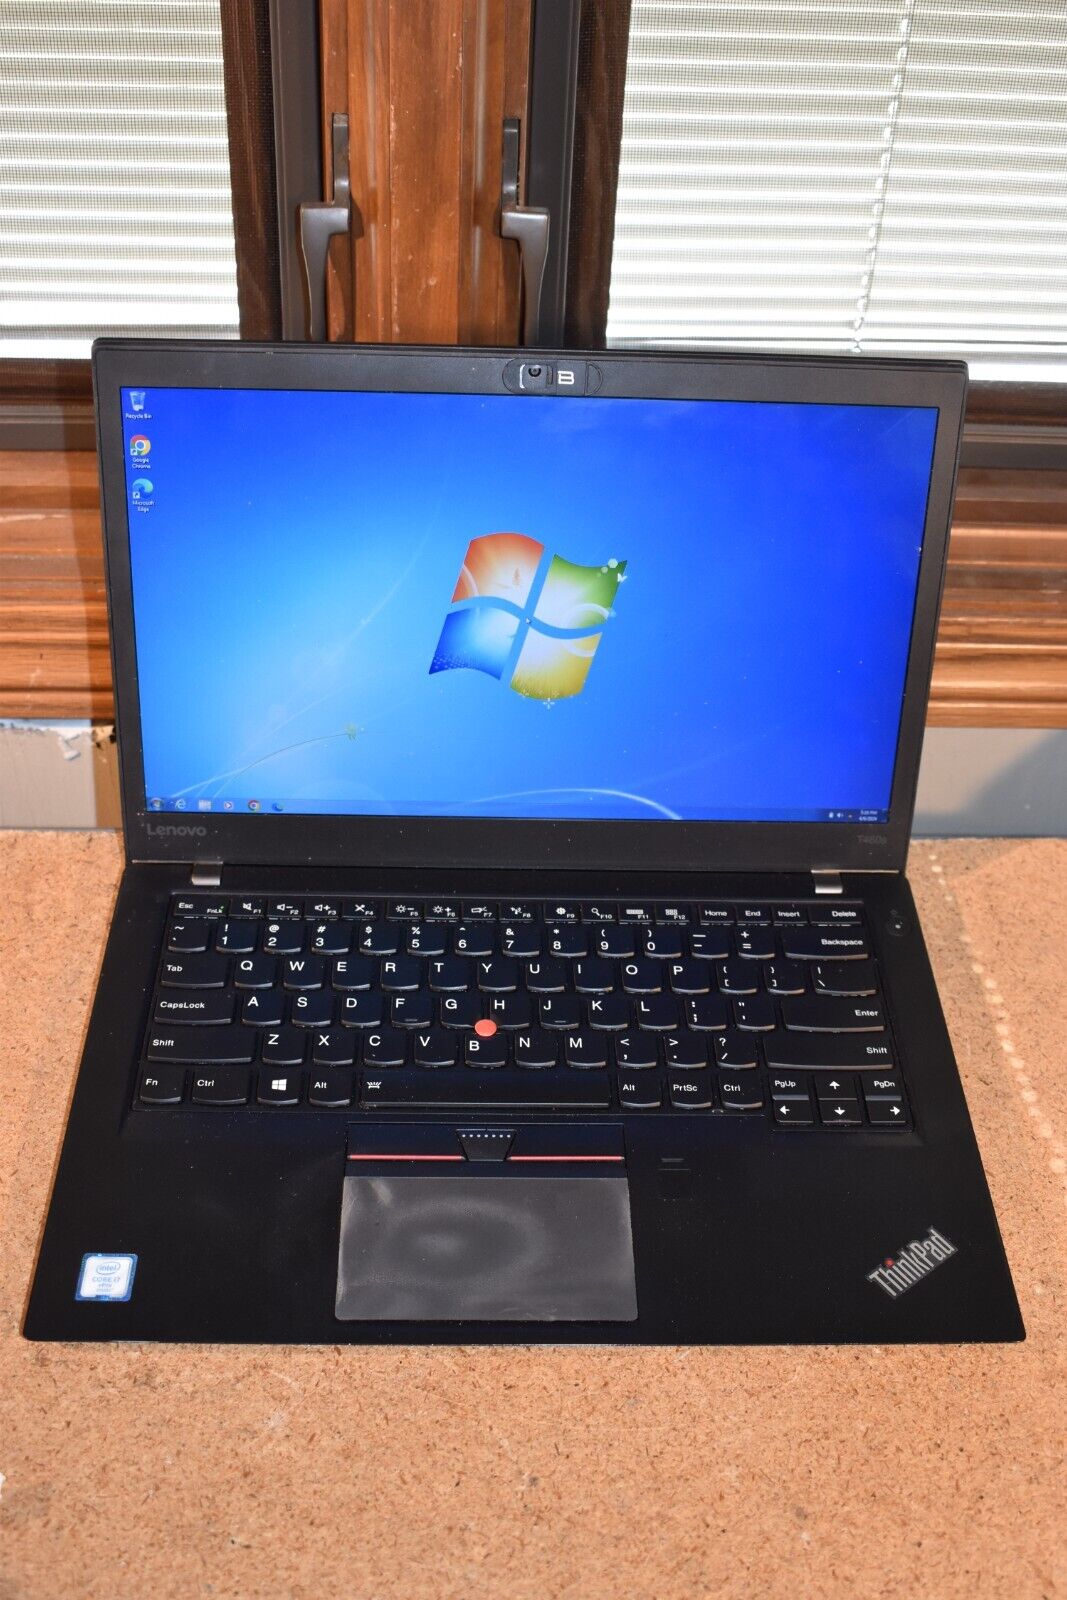 Lenovo ThinkPad T460s Core i7-6600U 2.6GHz 4GB 128GB SSD Windows 7 Pro 32-bit